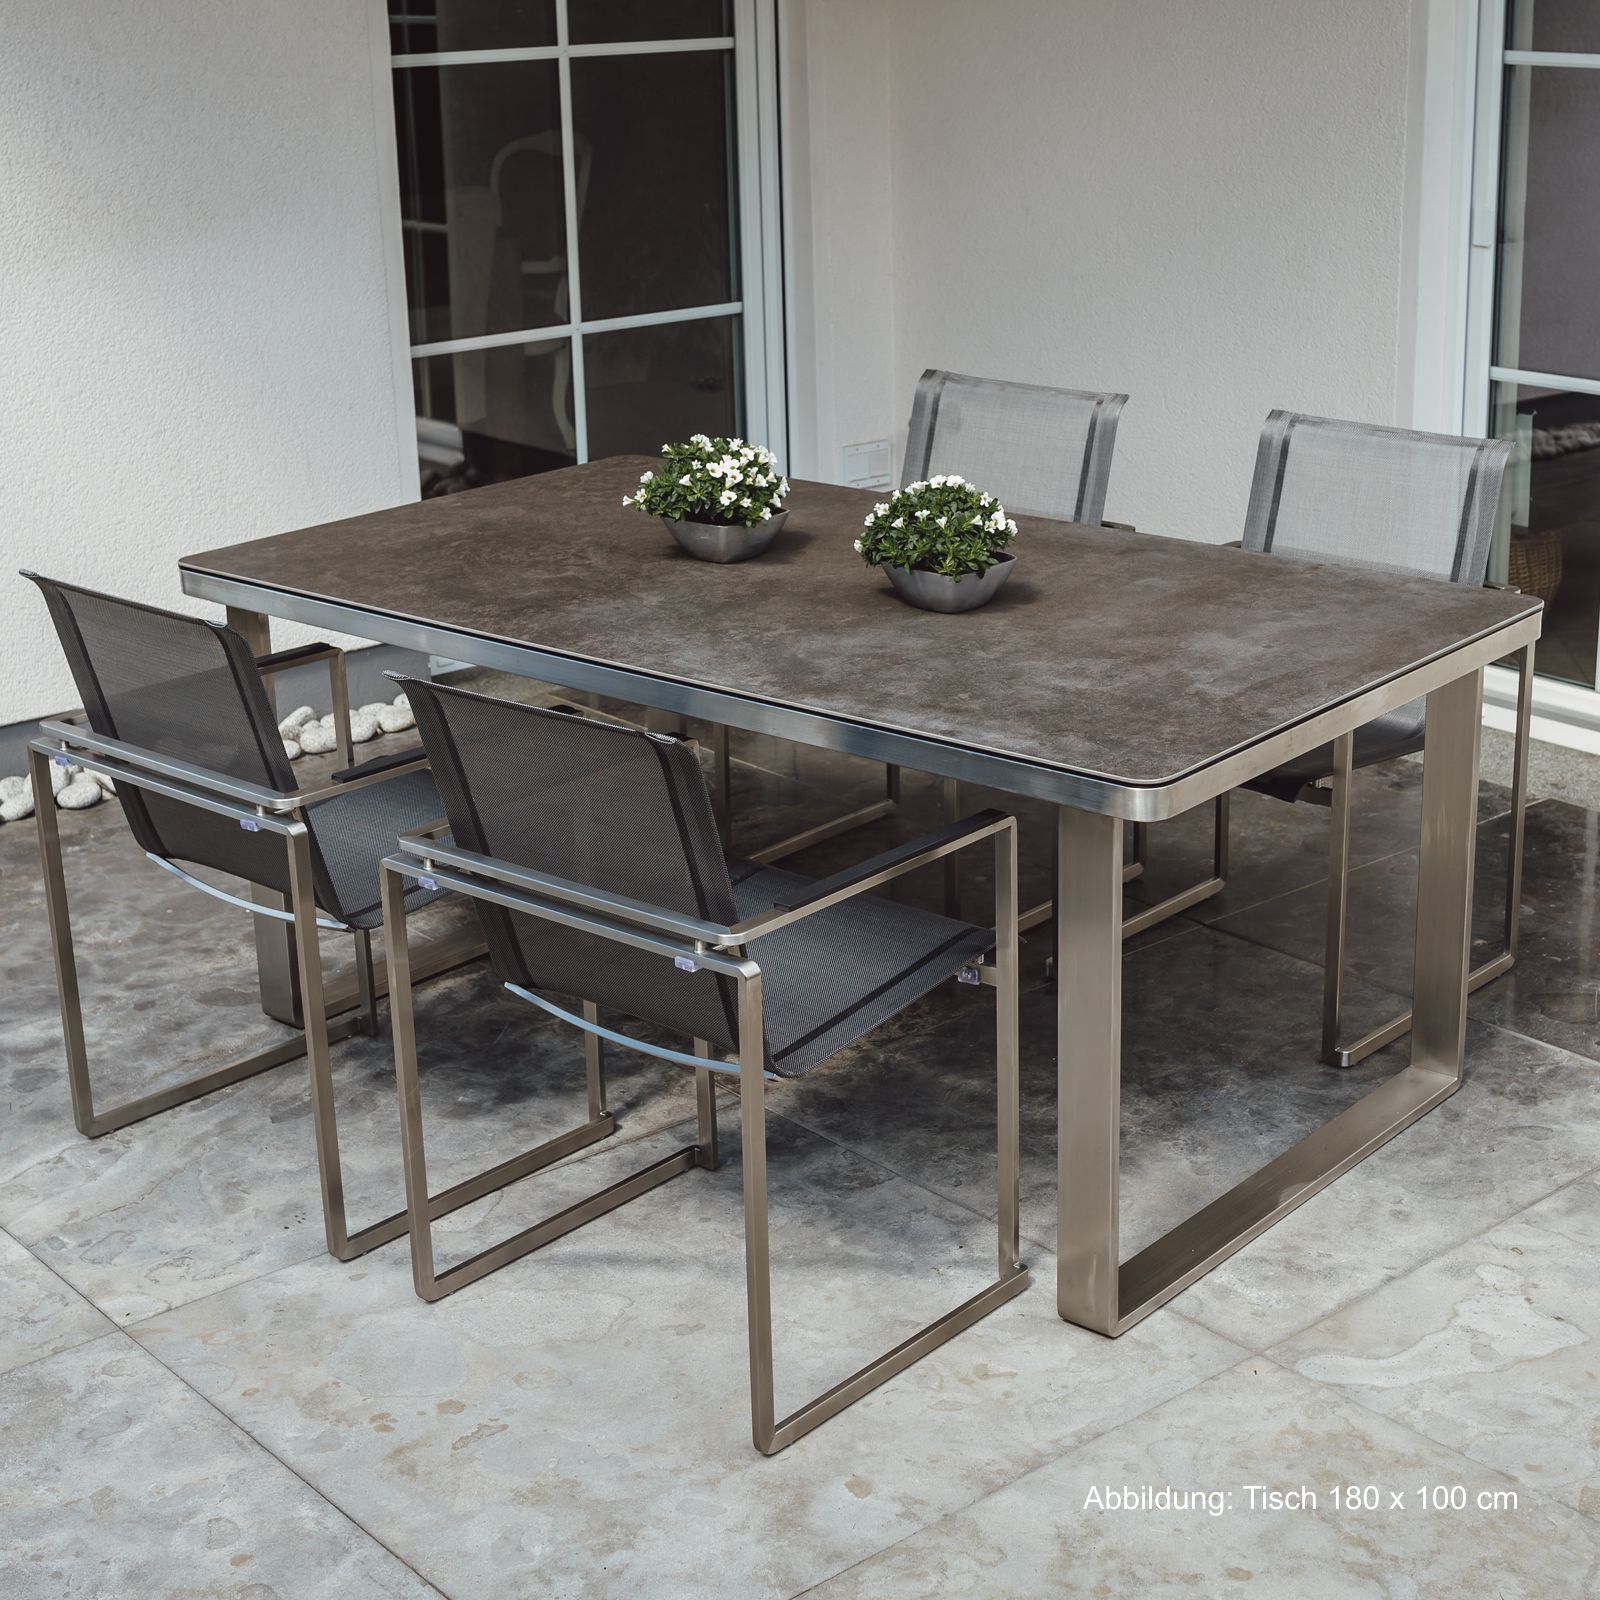 Gartenmöbel Set: 4 Stühle und 1 Tisch aus Edelstahl und Glaskeramik Tischplatte